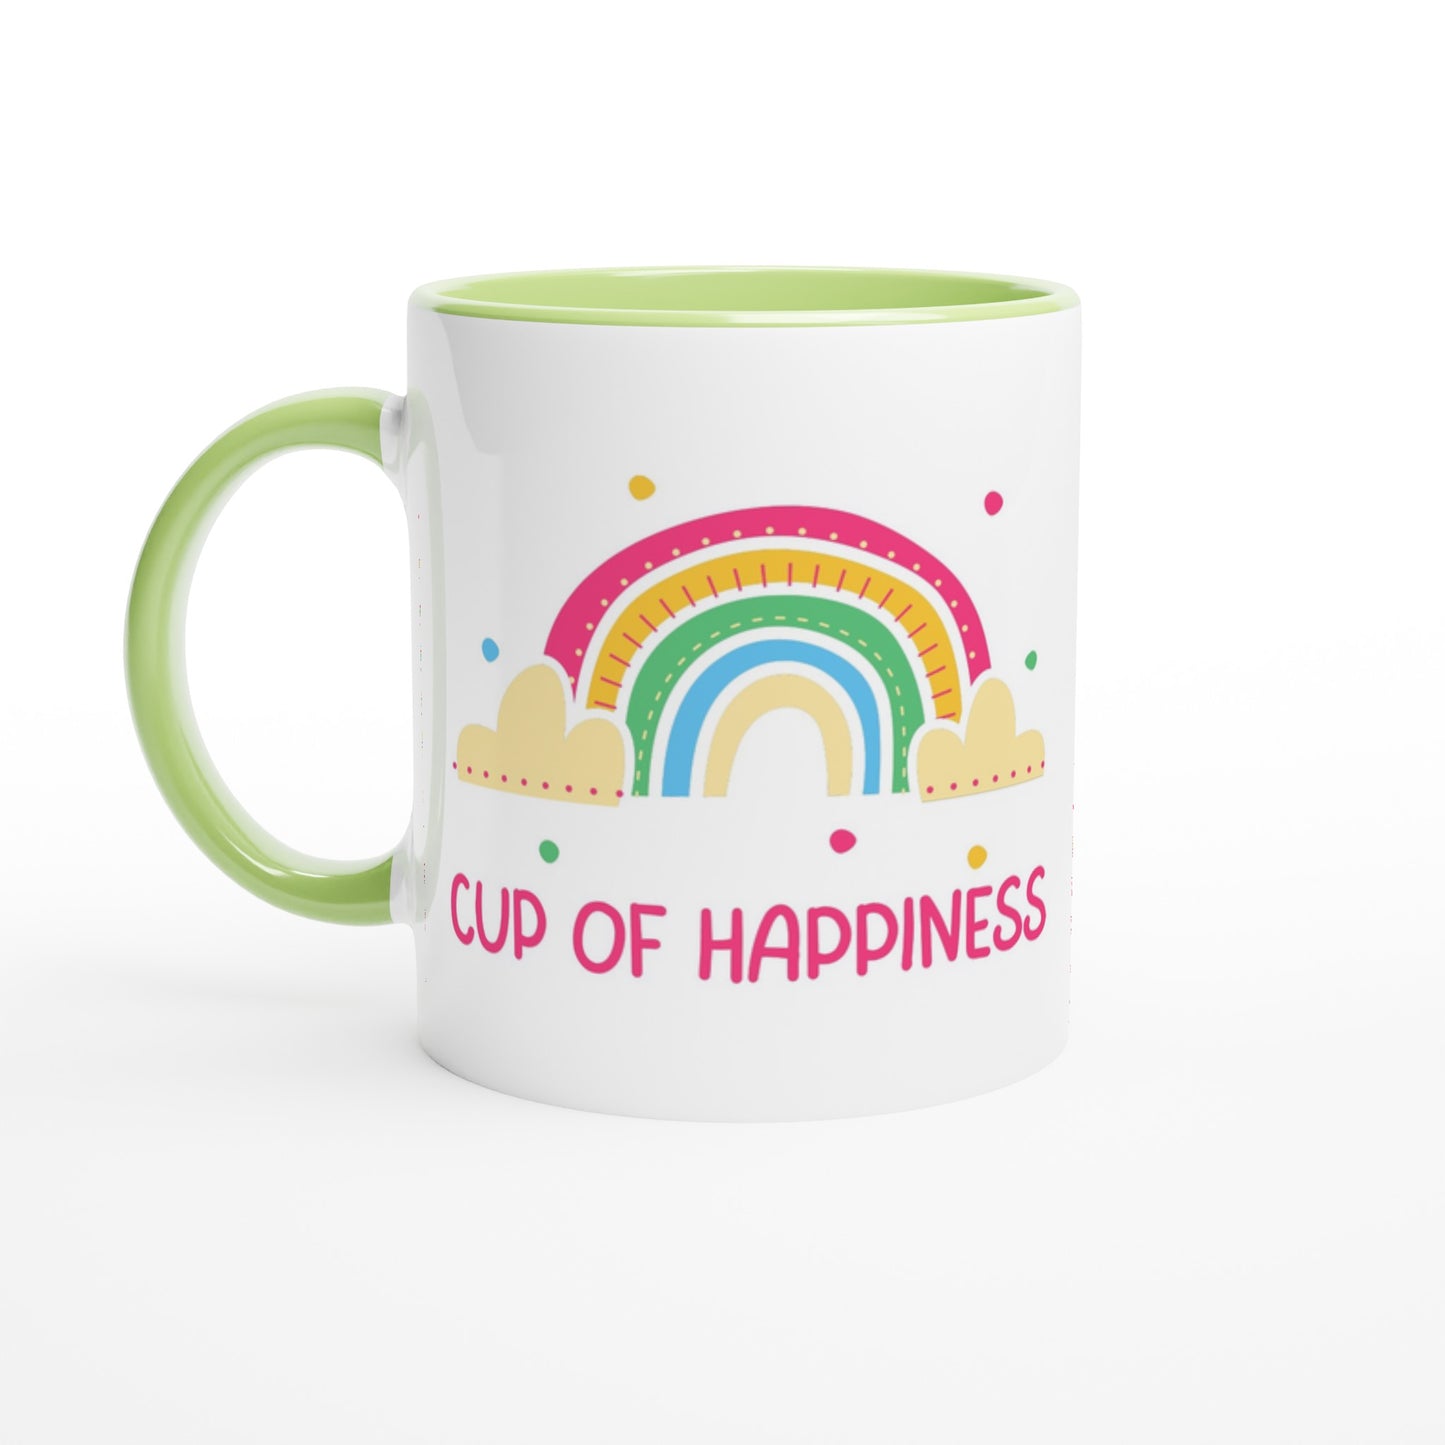 Cup Of Happiness - White 11oz Ceramic Mug with Colour Inside Ceramic Green Colour 11oz Mug positivity